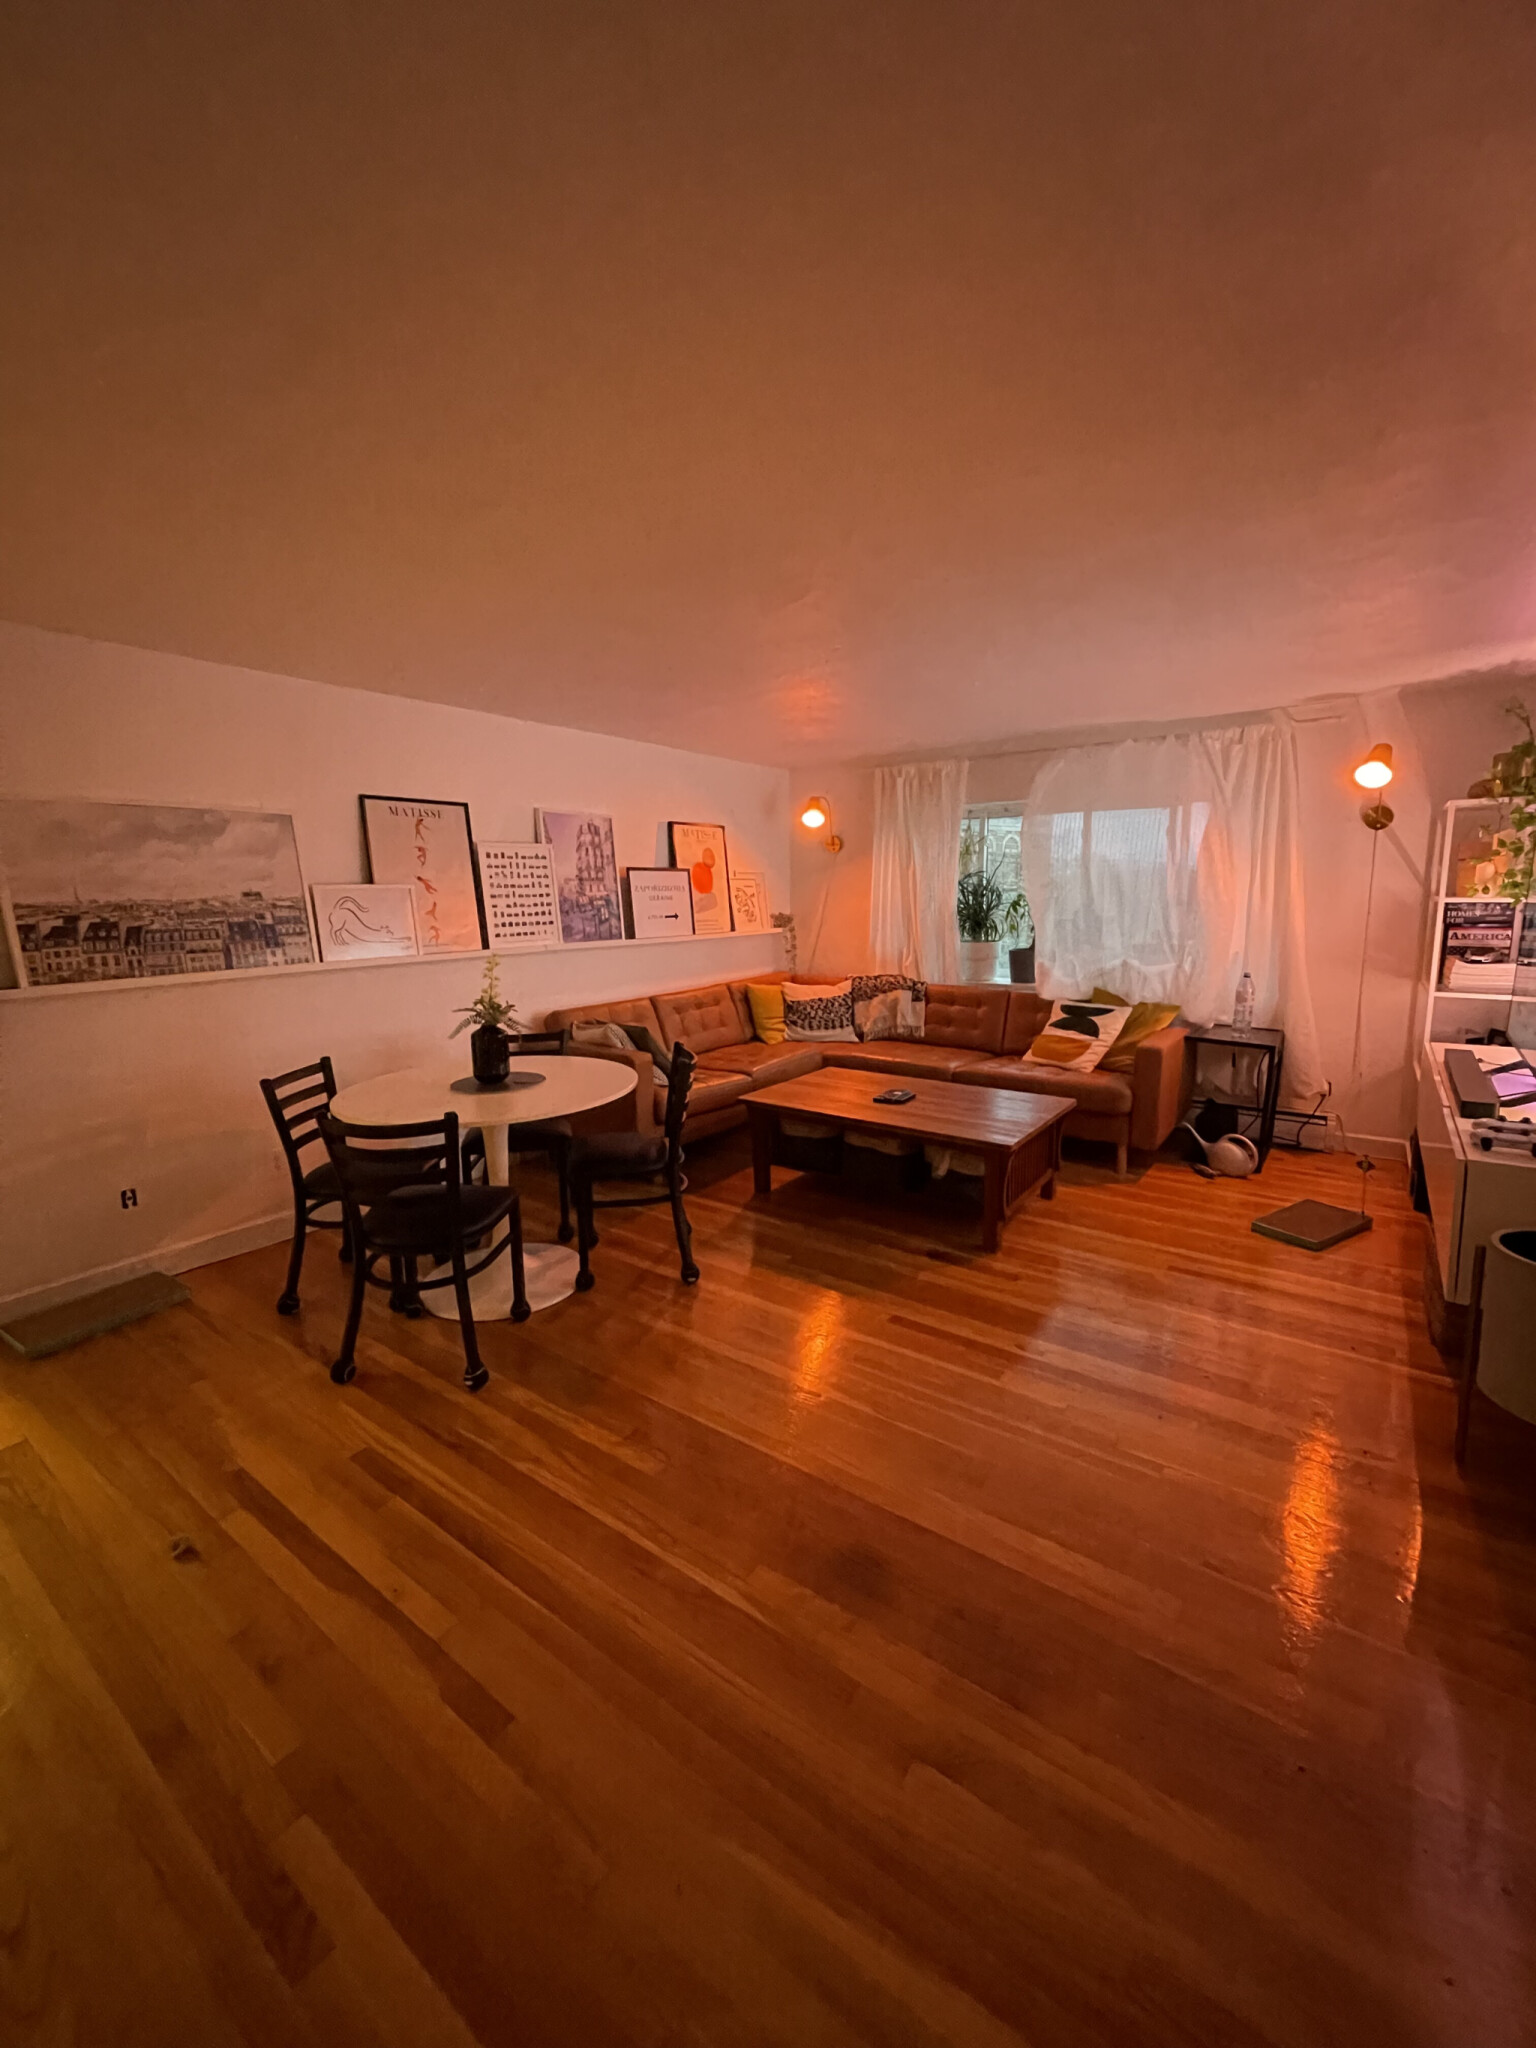 Photos of apartment on Dighton St.,Boston MA 02135